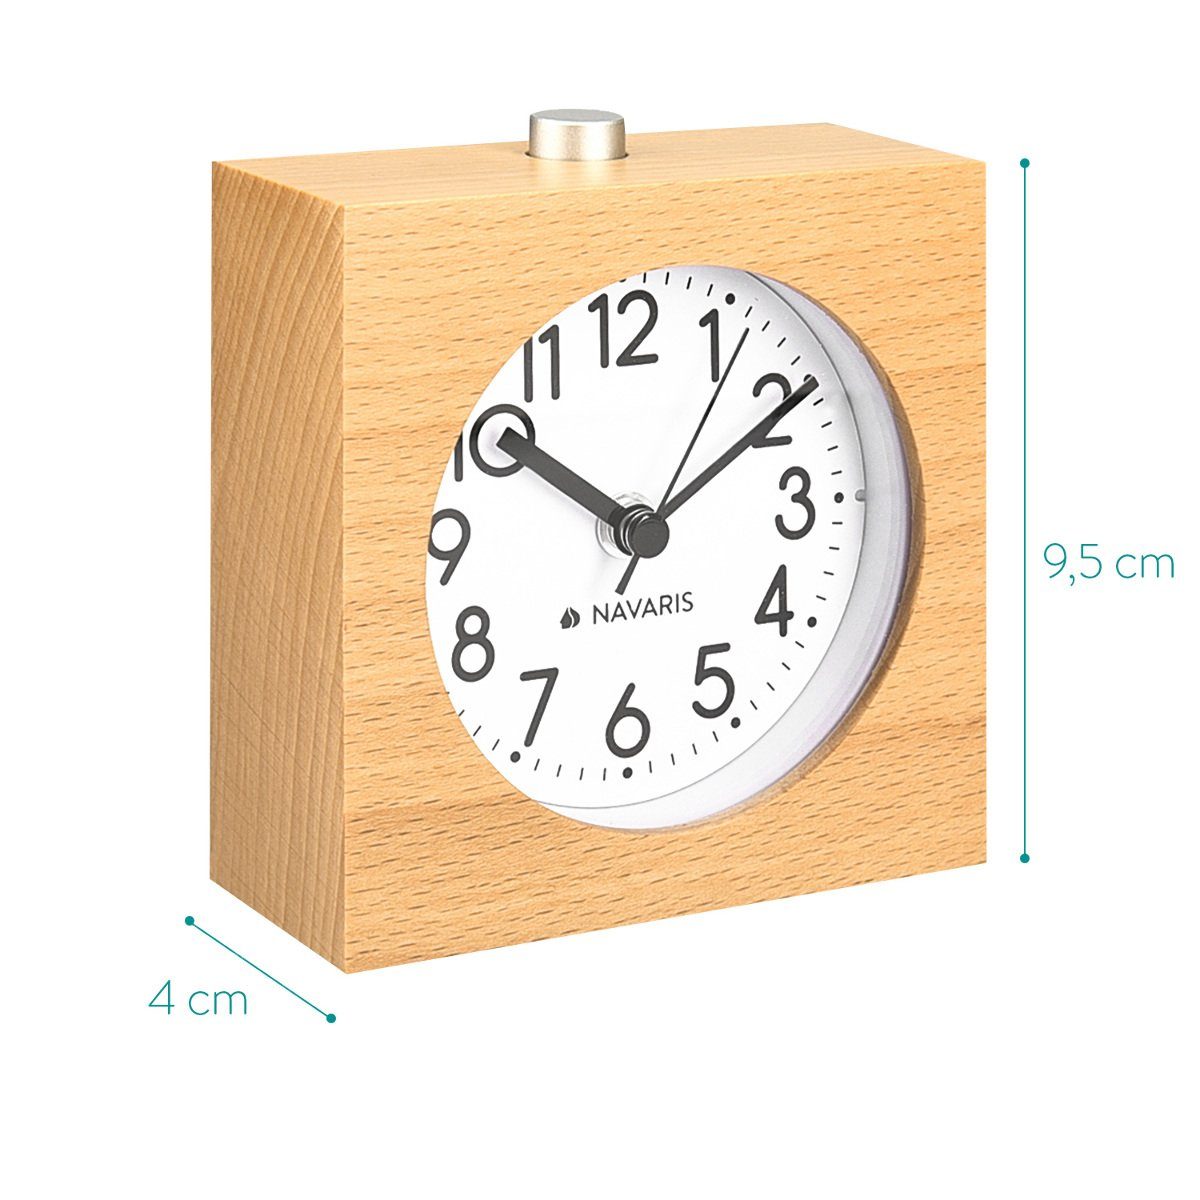 Naturholz - - Navaris Wecker mit im Uhr Design Viereck Holz Snooze Retro Wecker